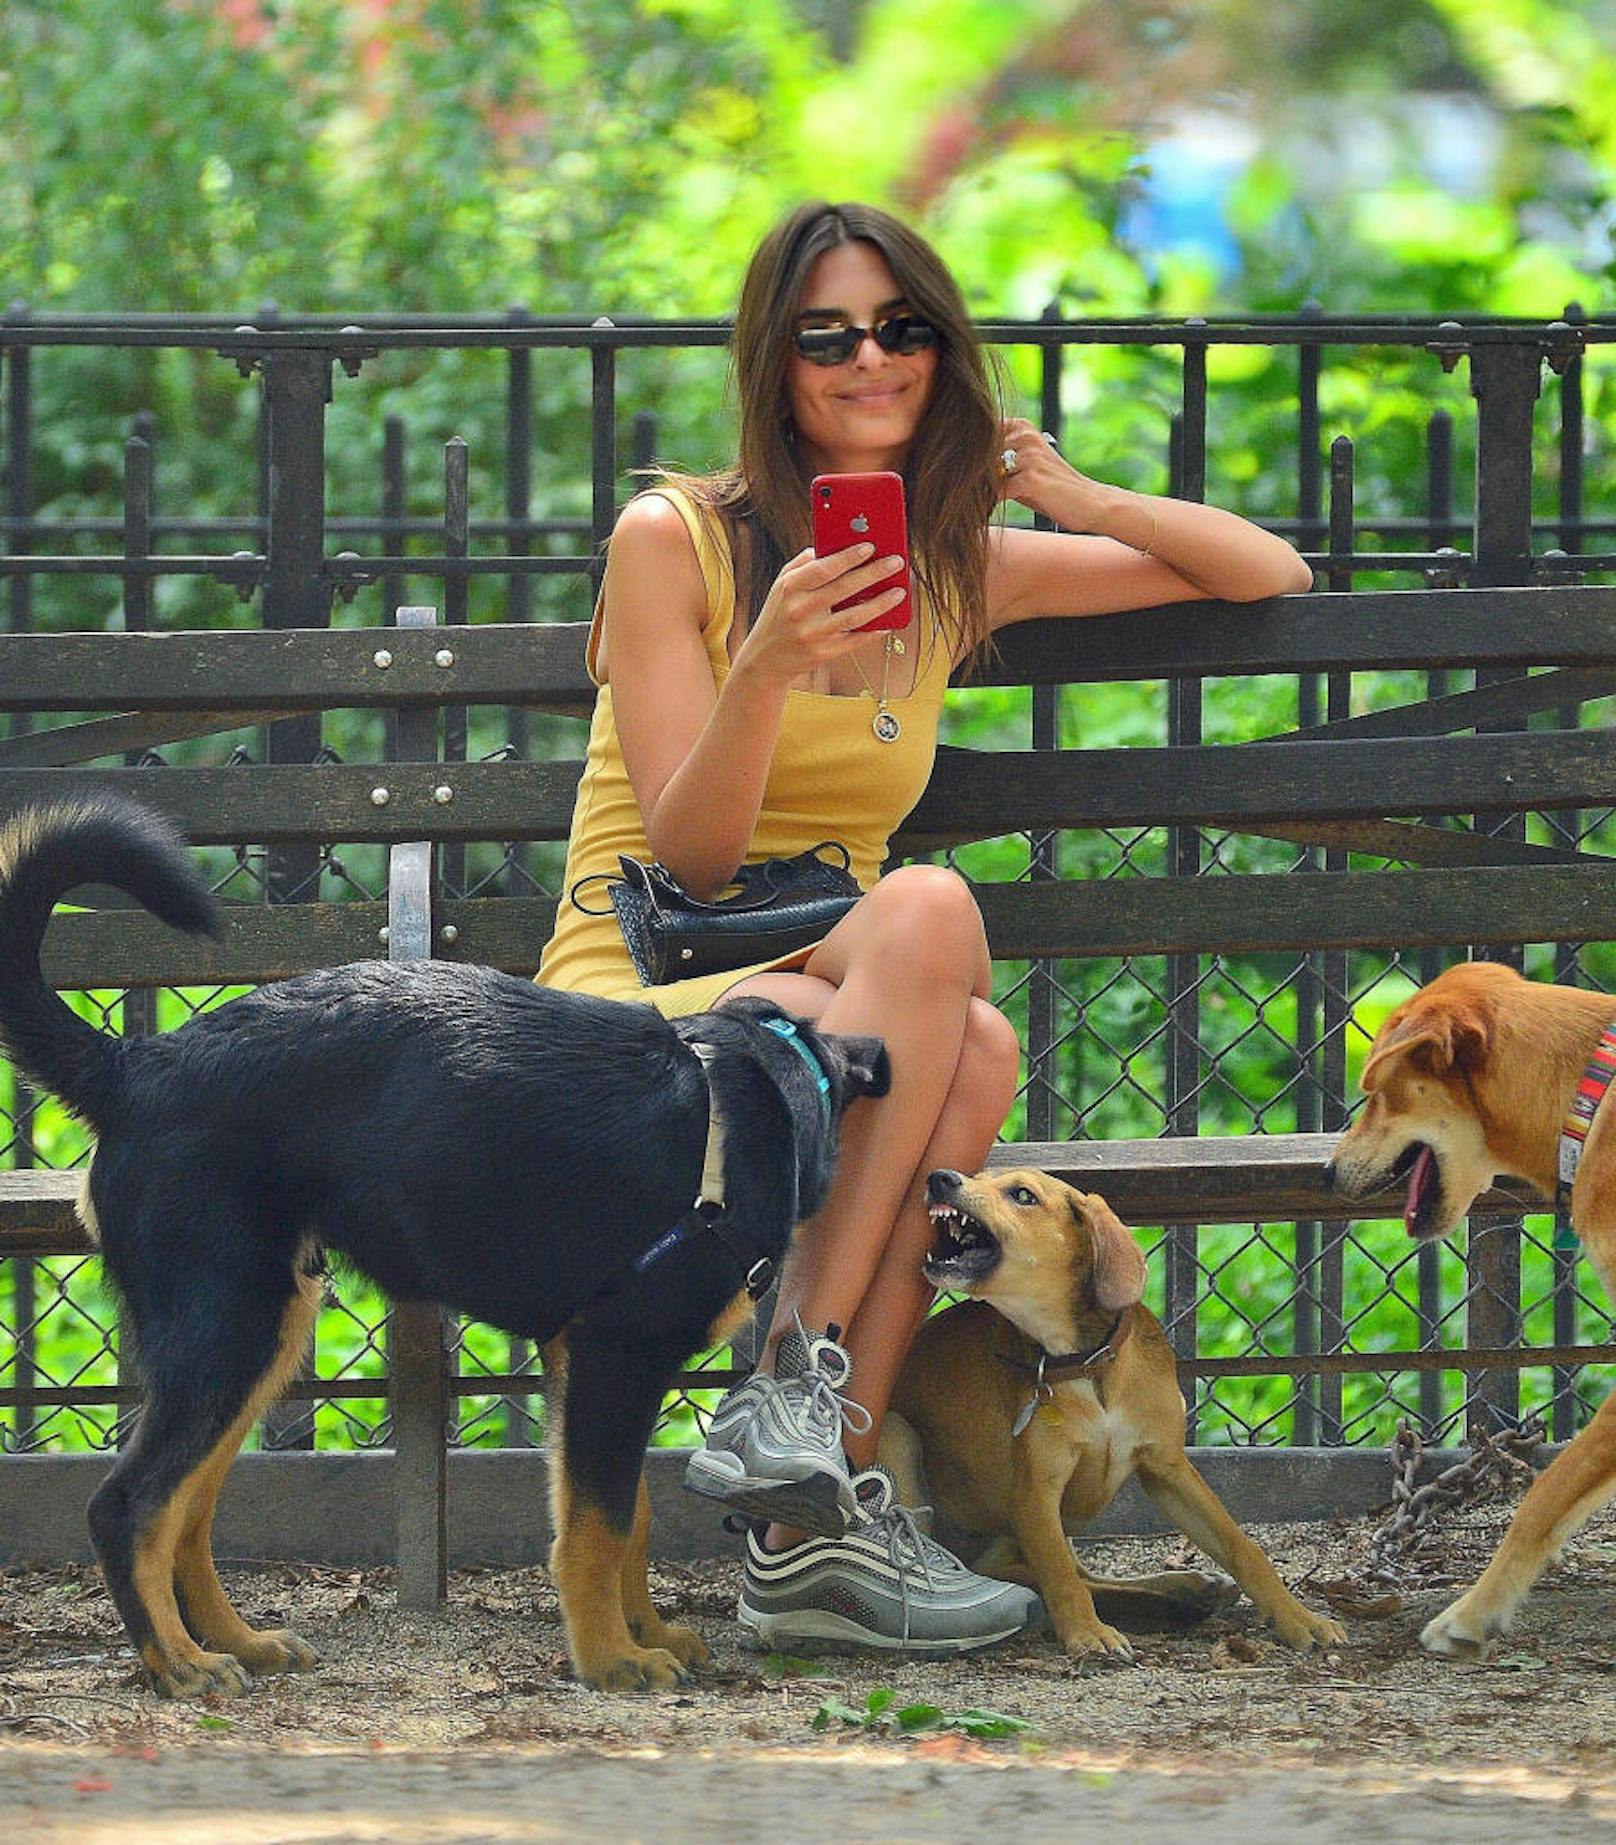 5.8.2019: Während Model Emily Ratajkowski brav in die Kamera lächelt, wird ihr Hund (links) von einem anderen zähnefletschenden Vierbeiner provoziert. Hoffentlich ist ihrem Wautzi nichts passiert!